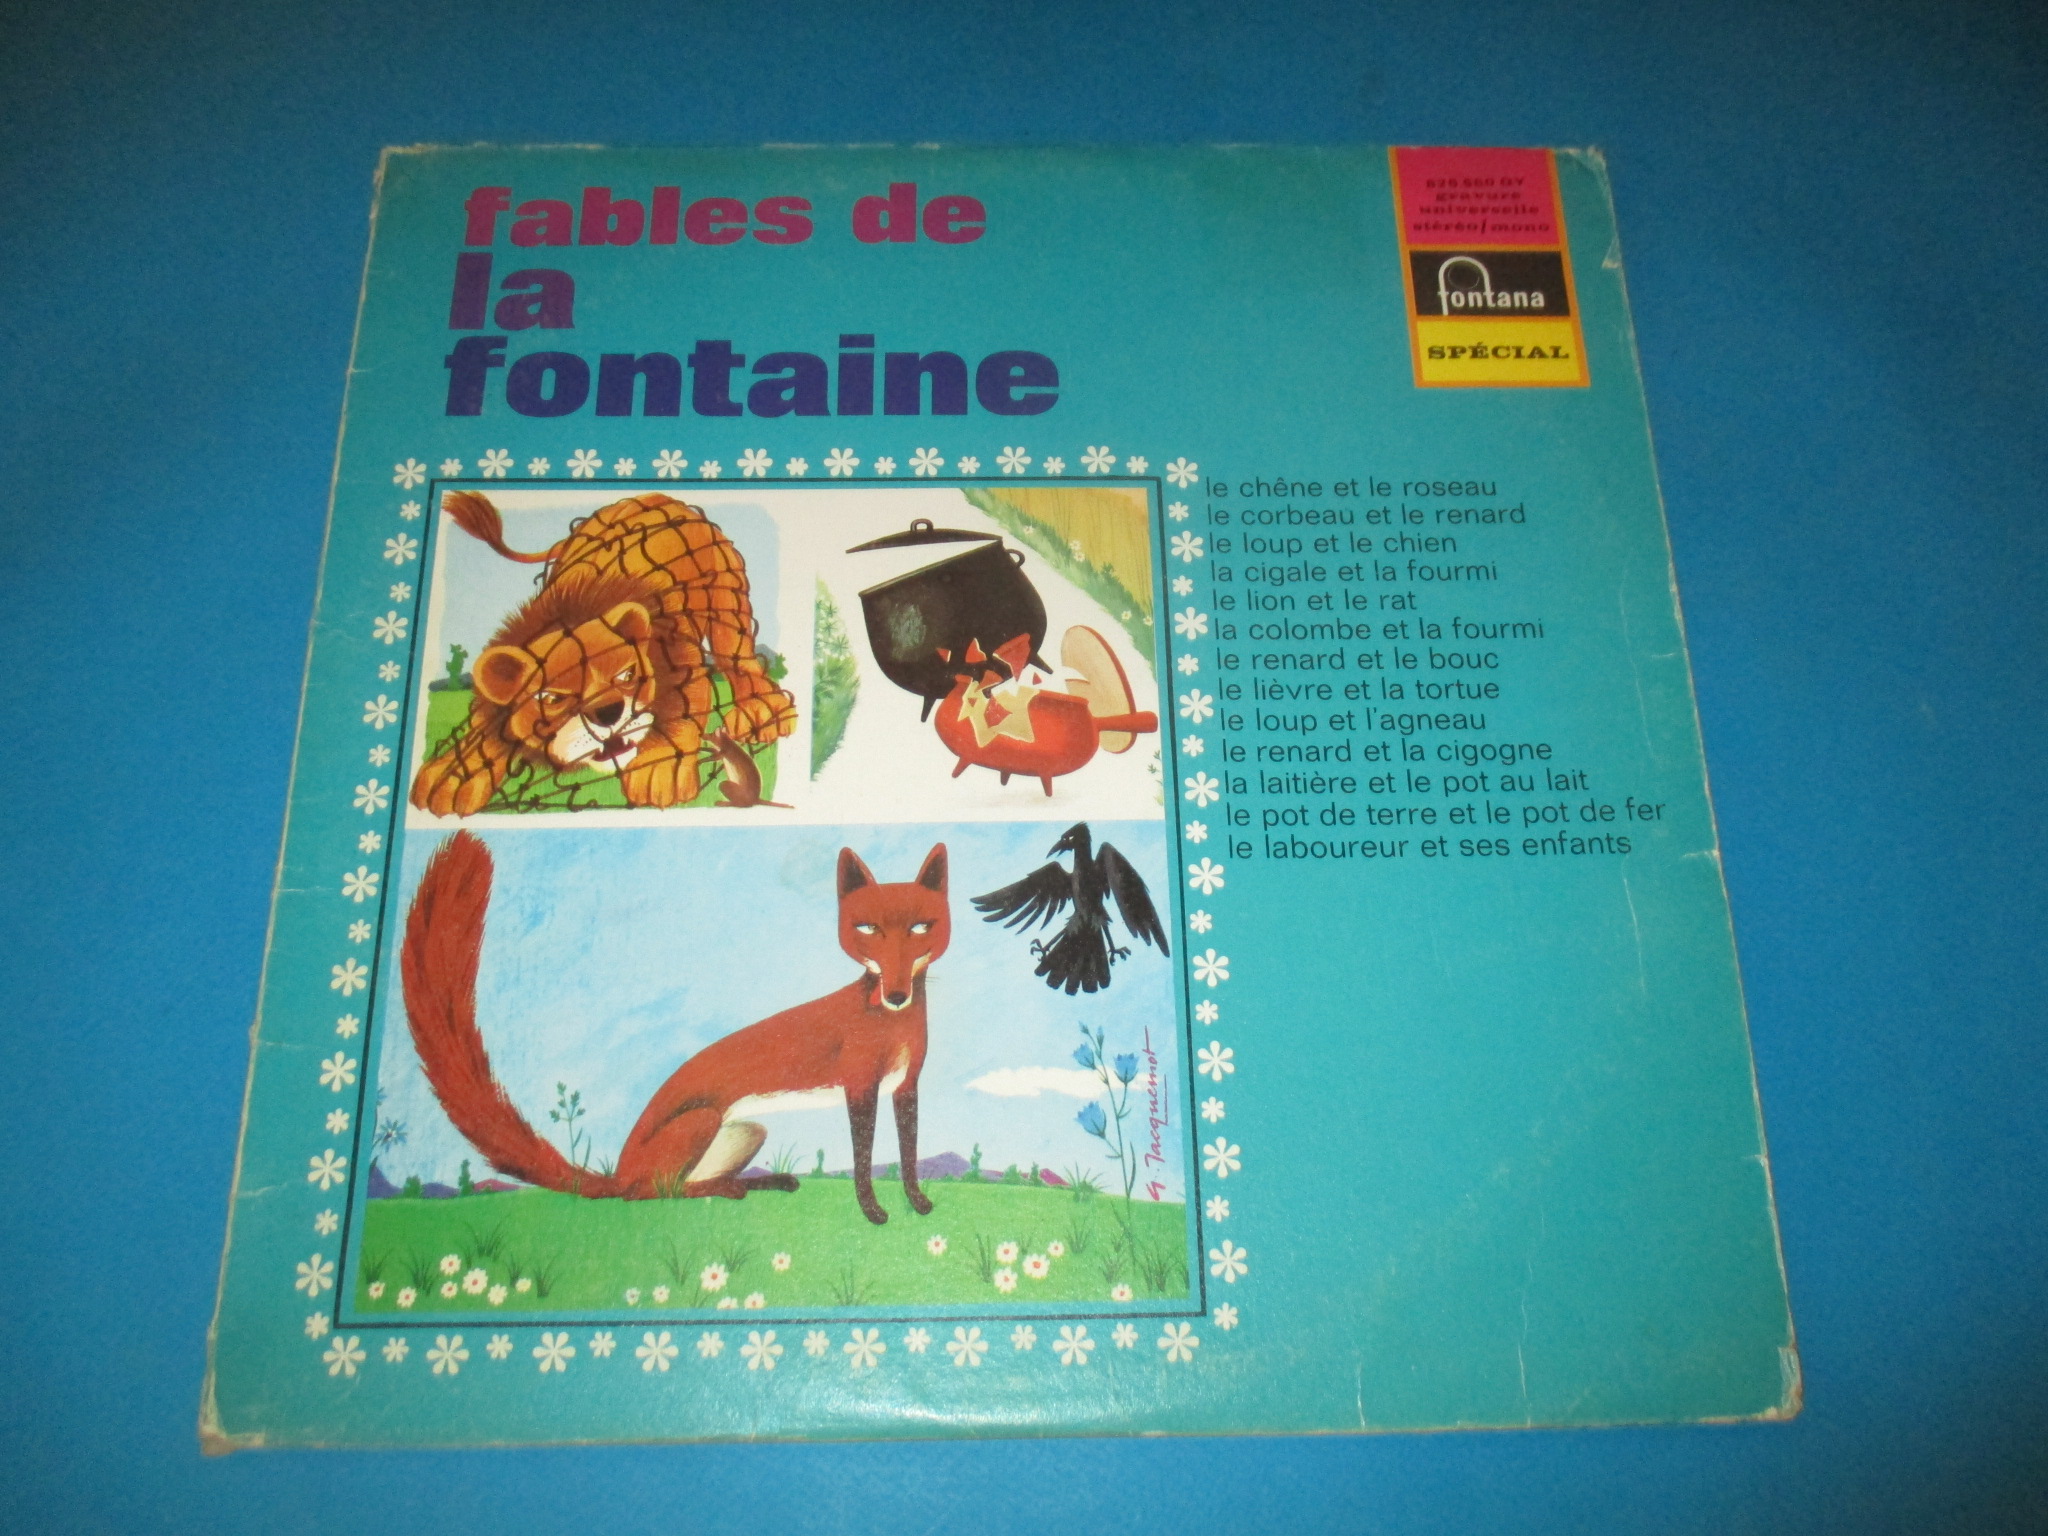 Disque 13 Fables de la Fontaine, Jean Marchat & Denise Gence, Fontana Spécial 826.560 QY